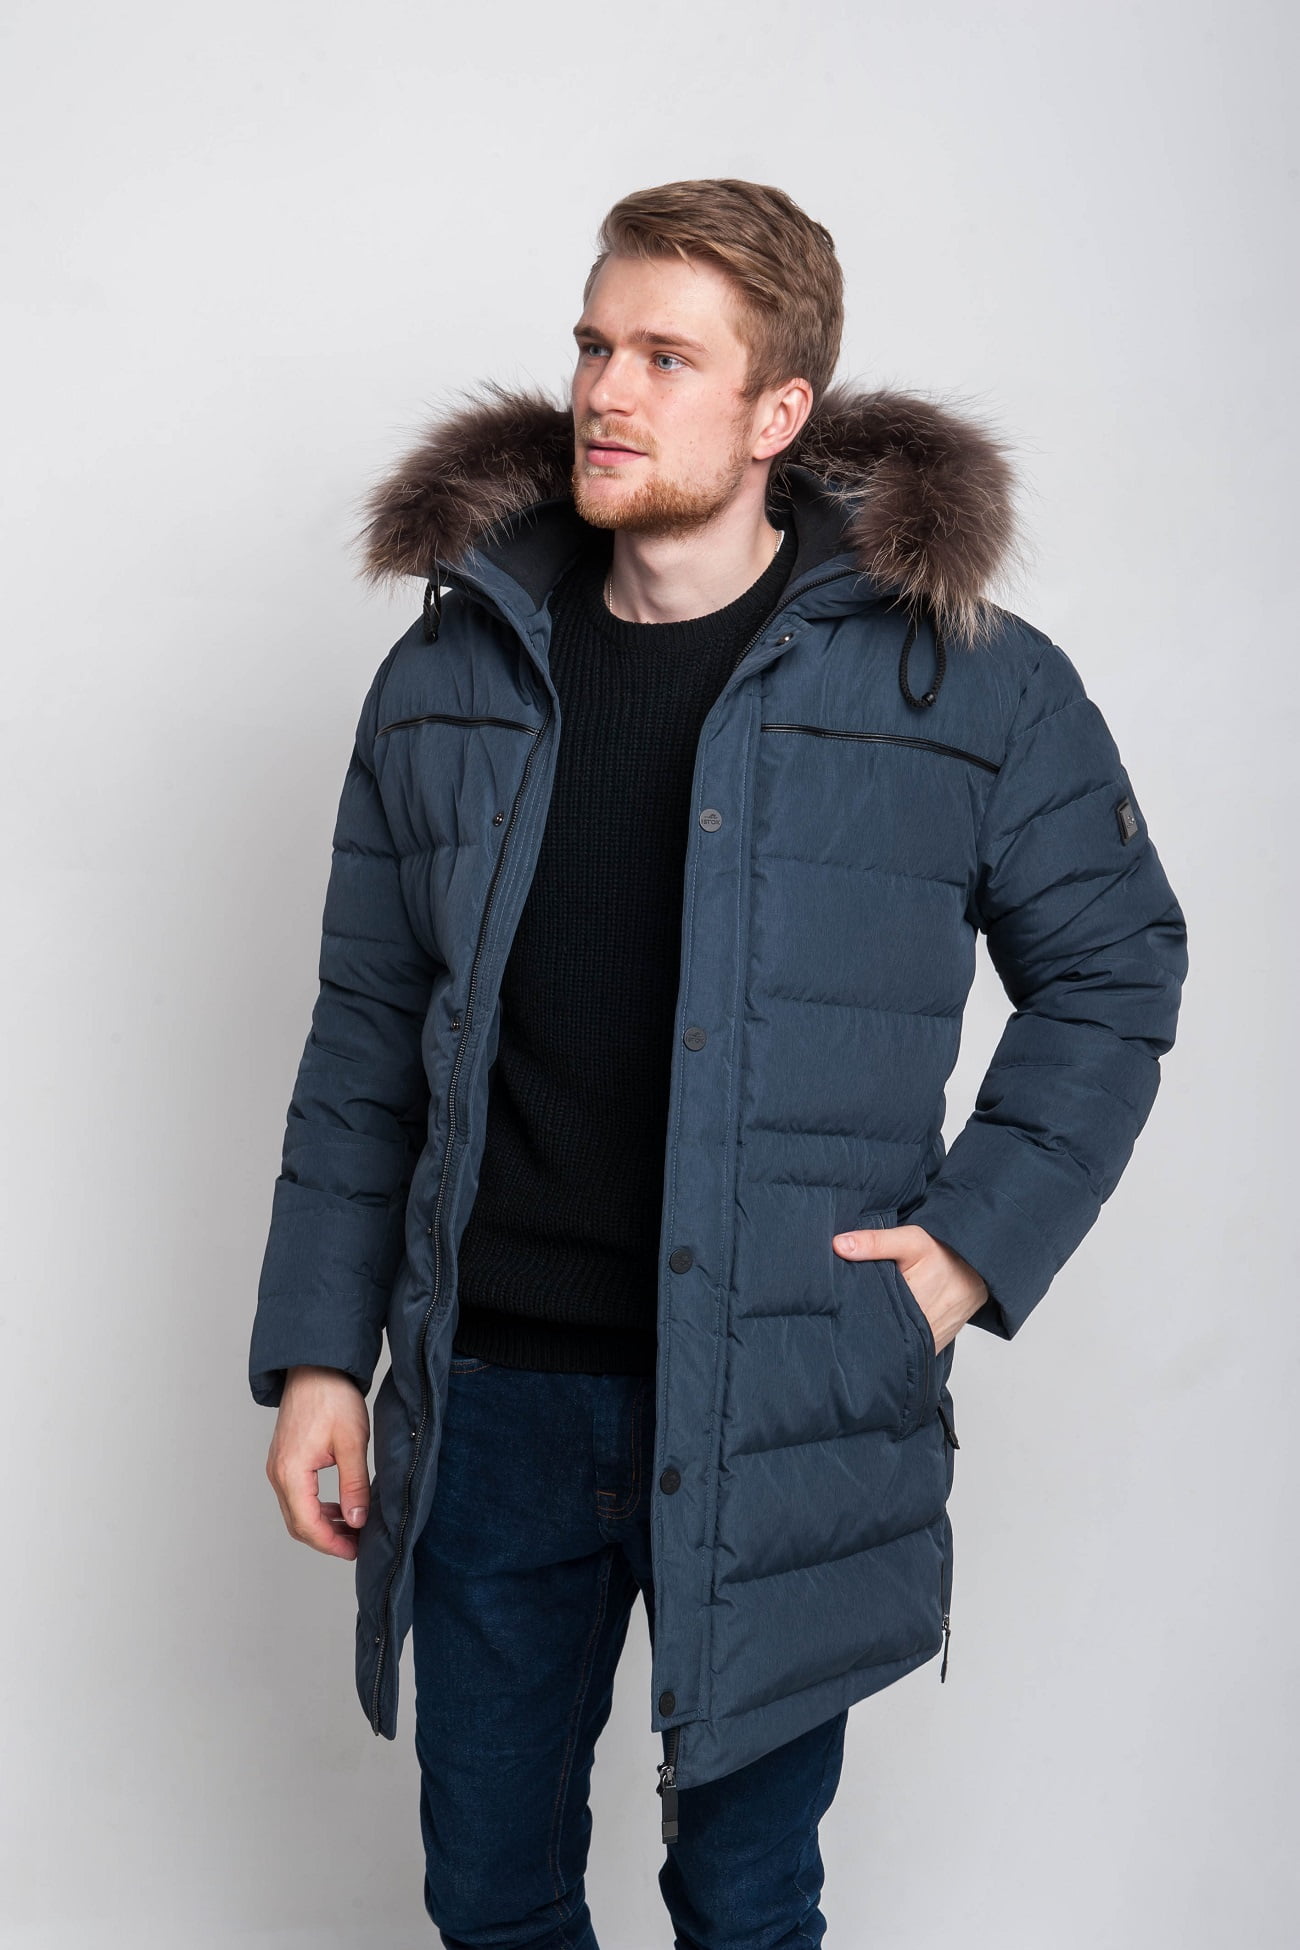 Мужские пуховики и зимние куртки — купить в интернет-магазине Ламода